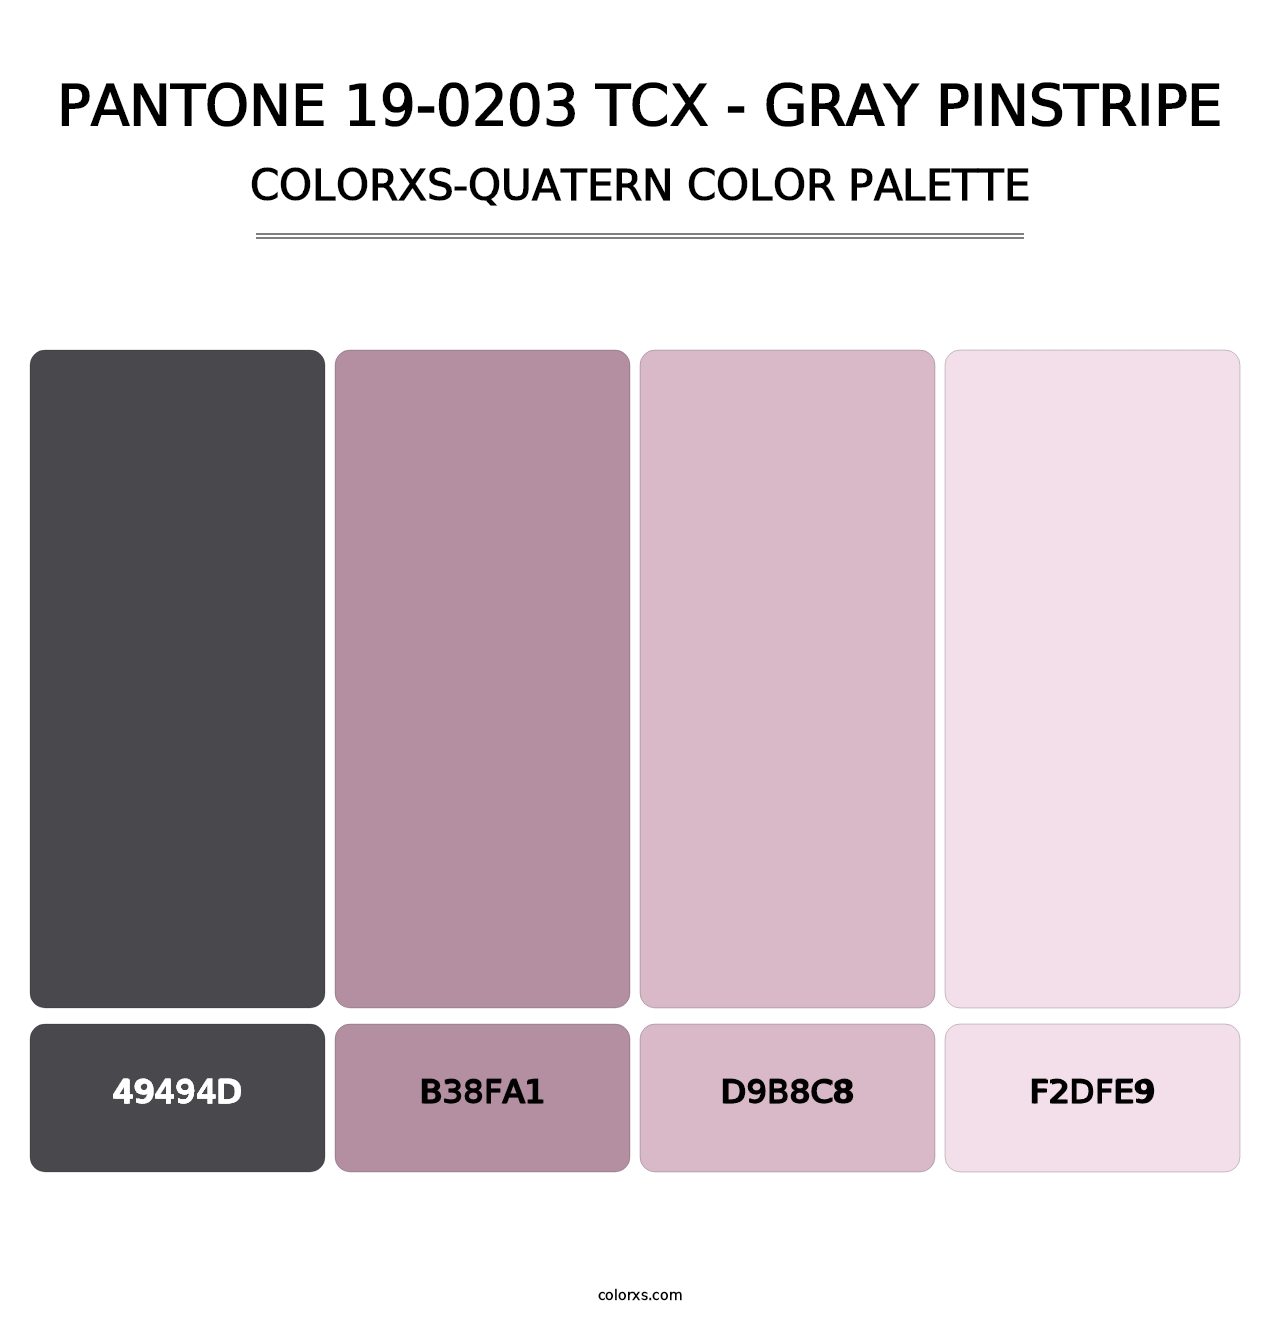 PANTONE 19-0203 TCX - Gray Pinstripe - Colorxs Quatern Palette